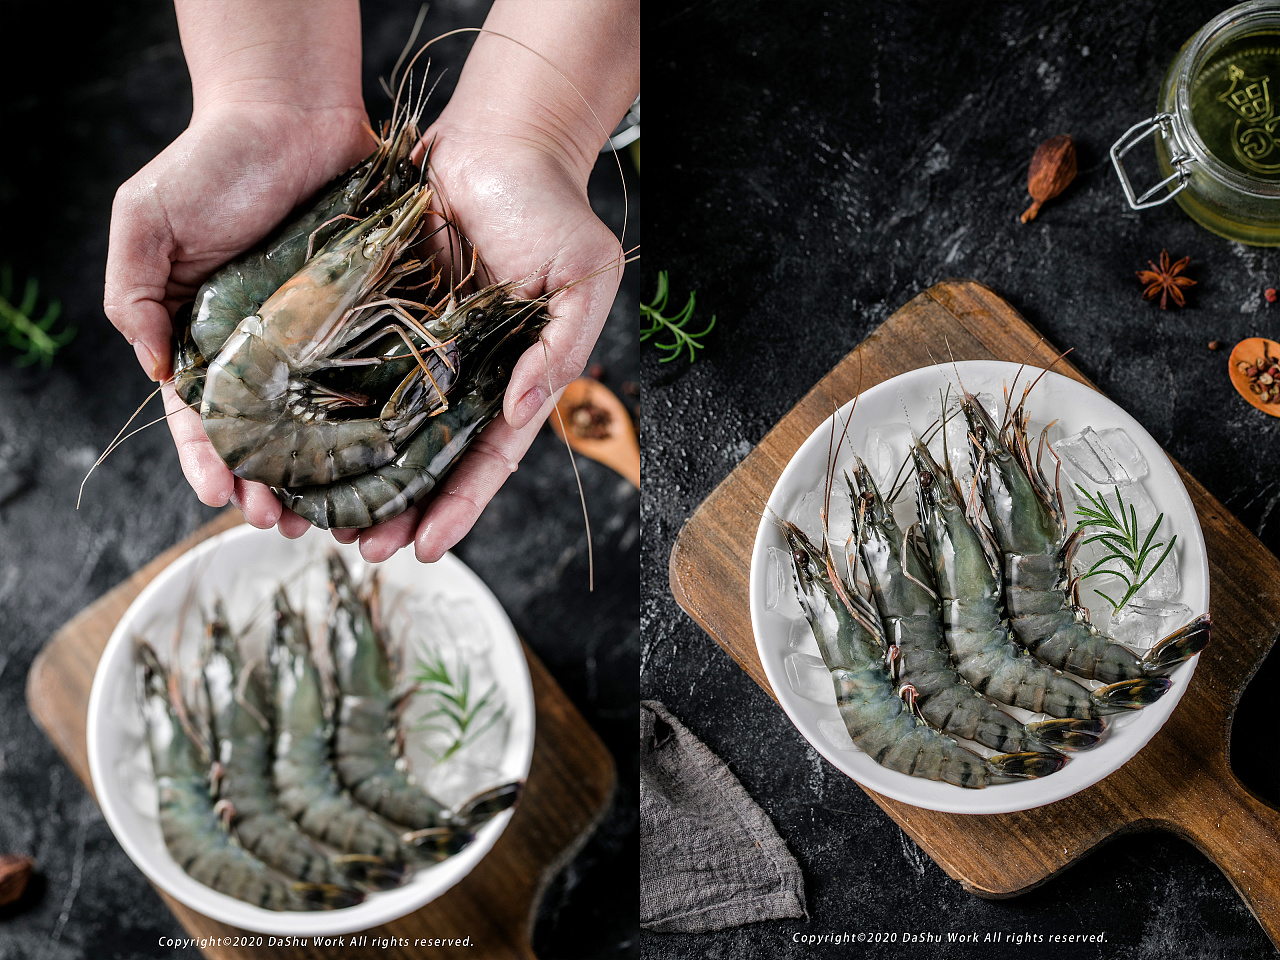 竹节虾的做法,竹节虾的形态特征,竹节虾的药理功效,竹节虾的生活习性_齐家网